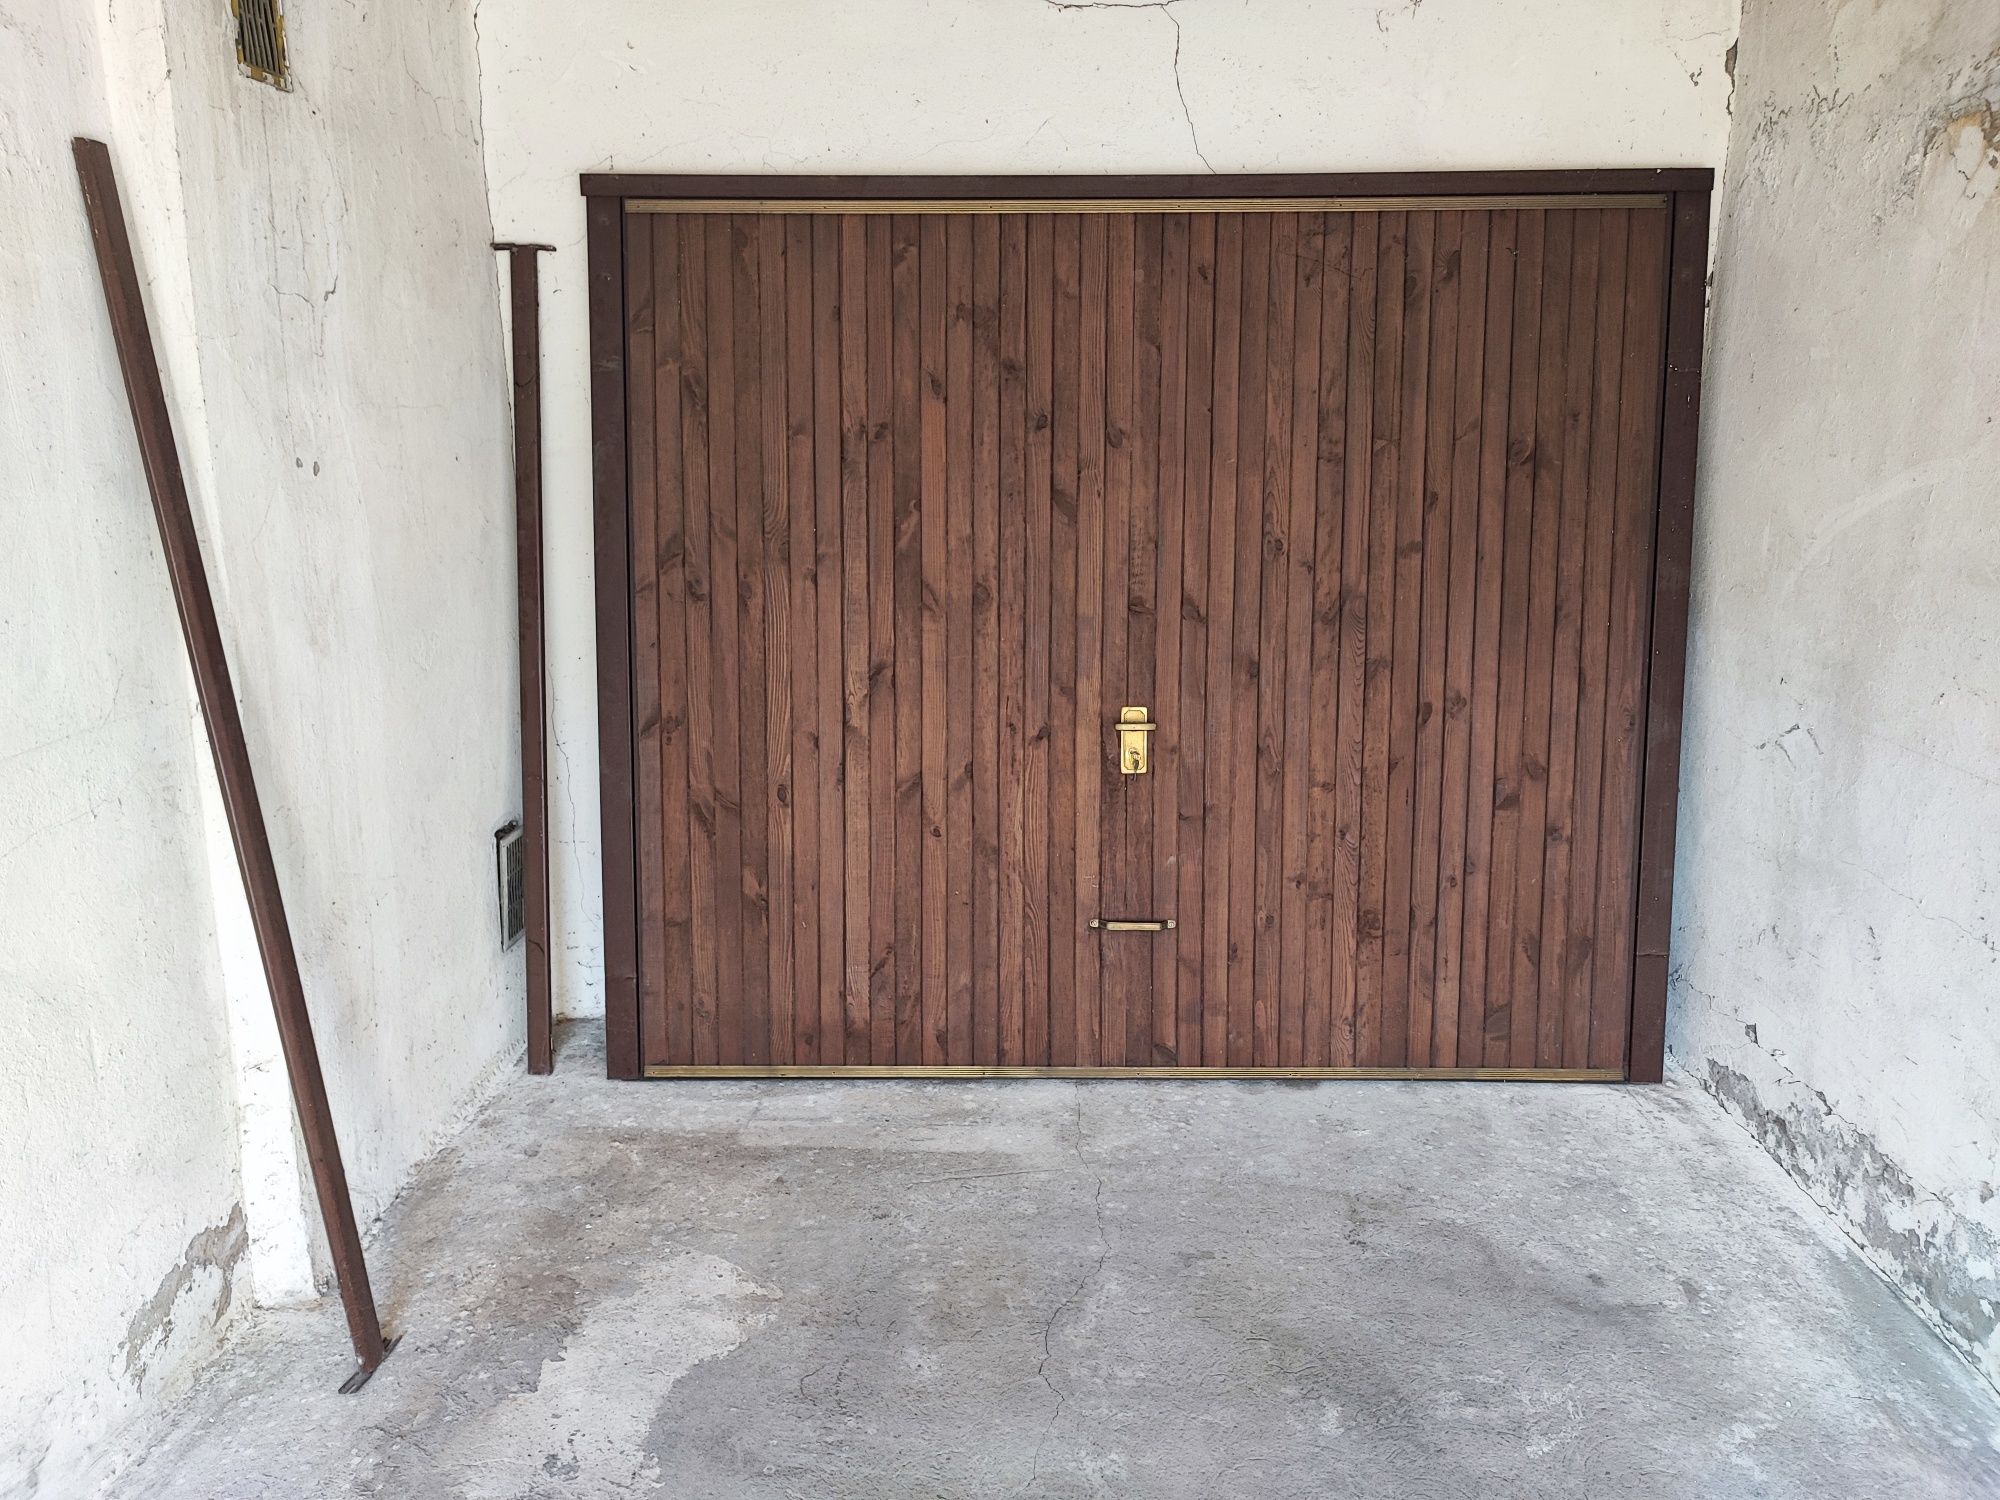 Brama garażowa uchylna, drewno, unikat,  okazja, pilne, tanio!